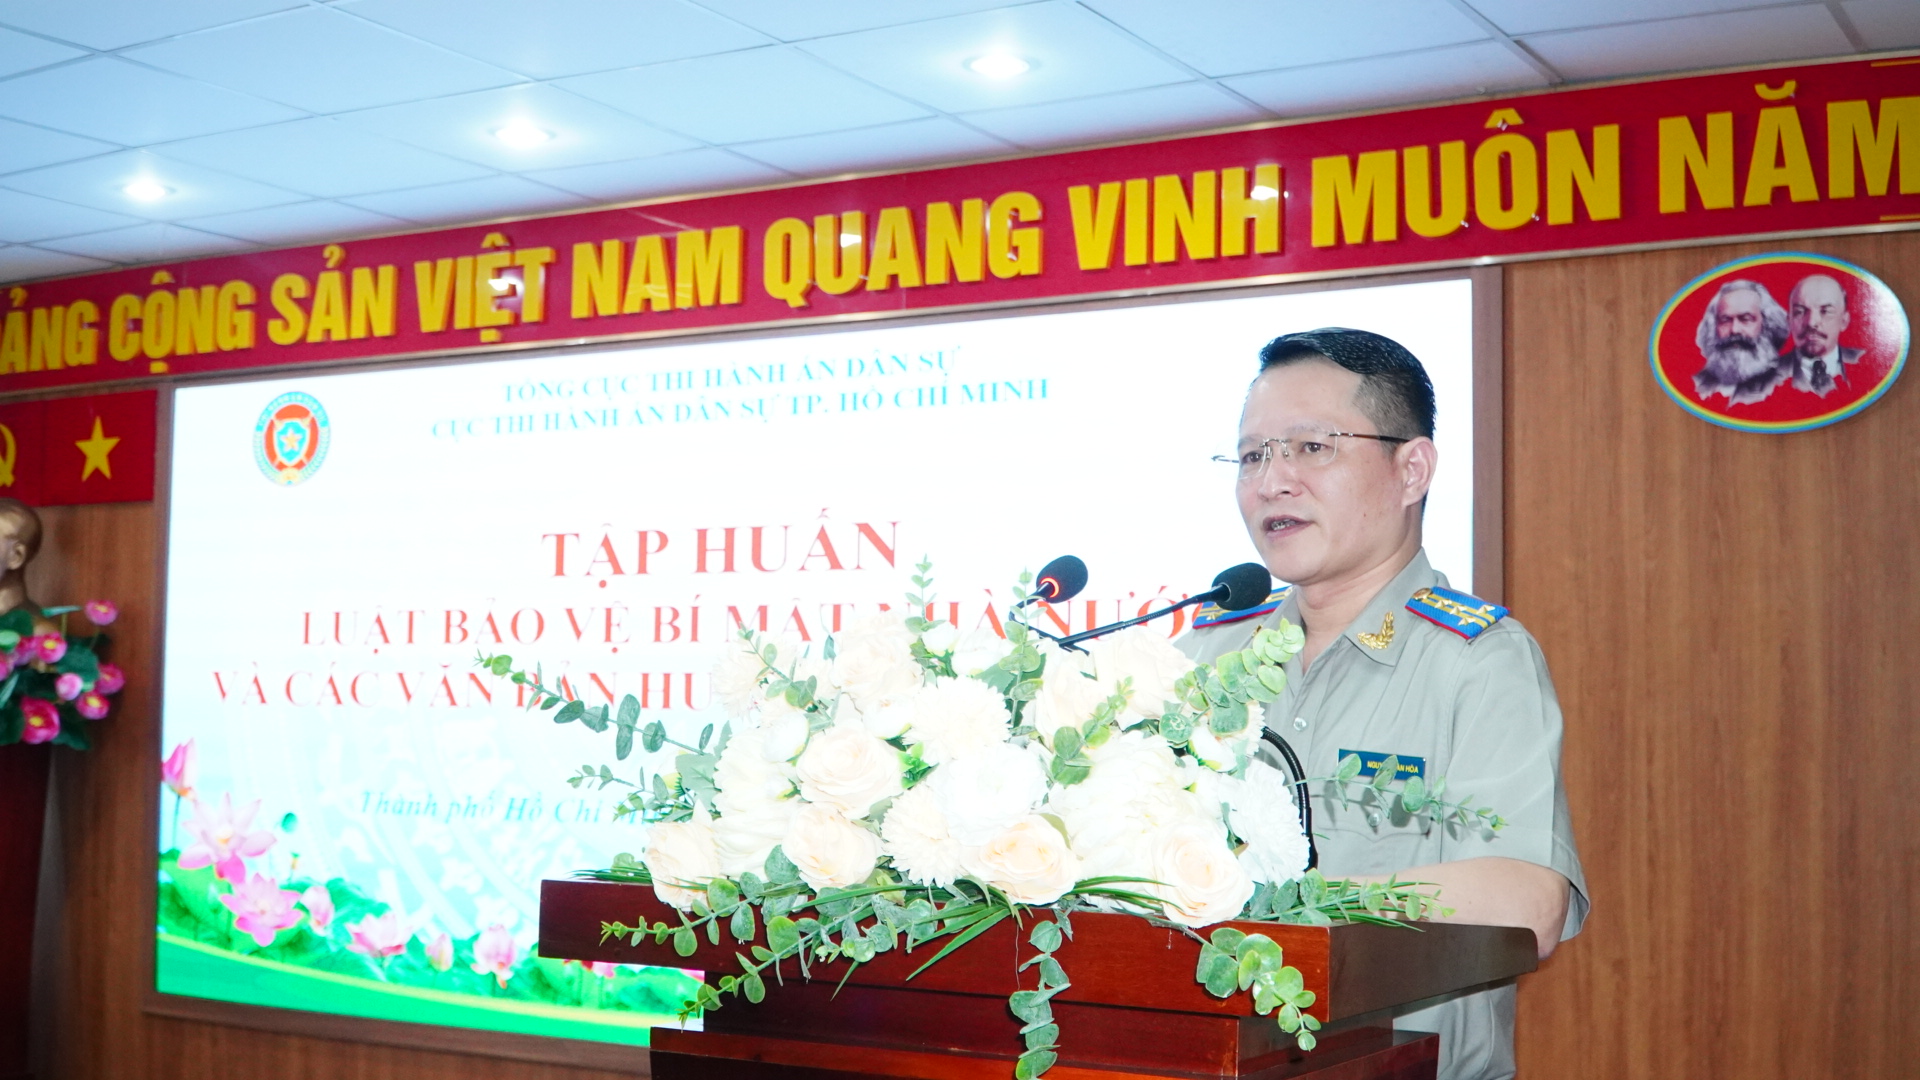 TP. Hồ Chí Minh:  Tập huấn Luật Bảo vệ bí mật nhà nước  và các văn bản hướng dẫn